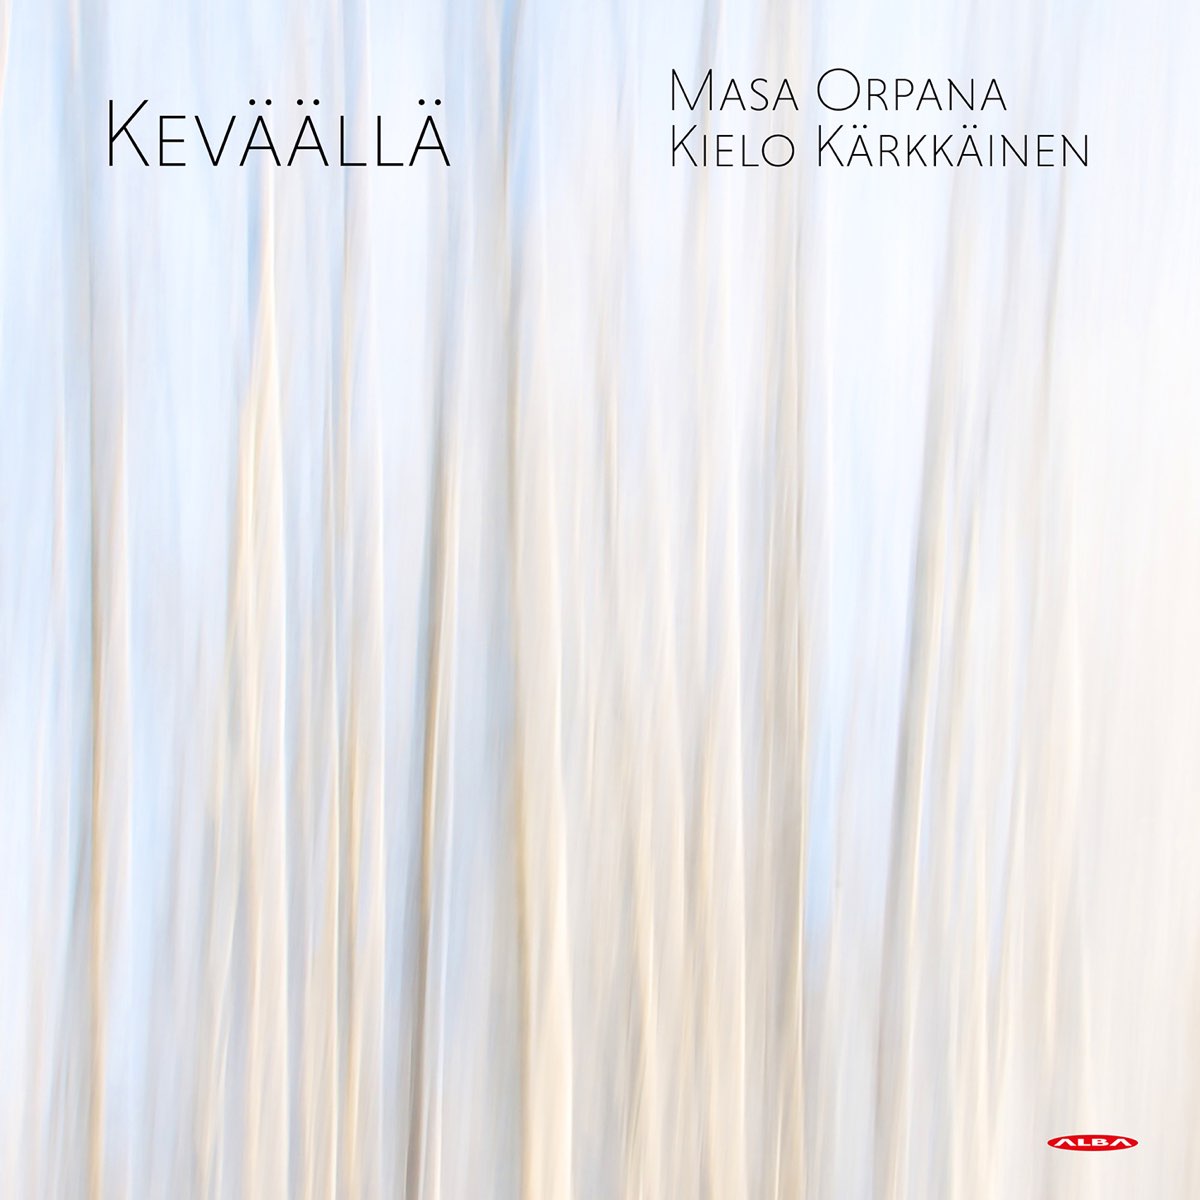 Keväällä (feat. Kielo Kärkkäinen) - Single by Masa Orpana on Apple Music